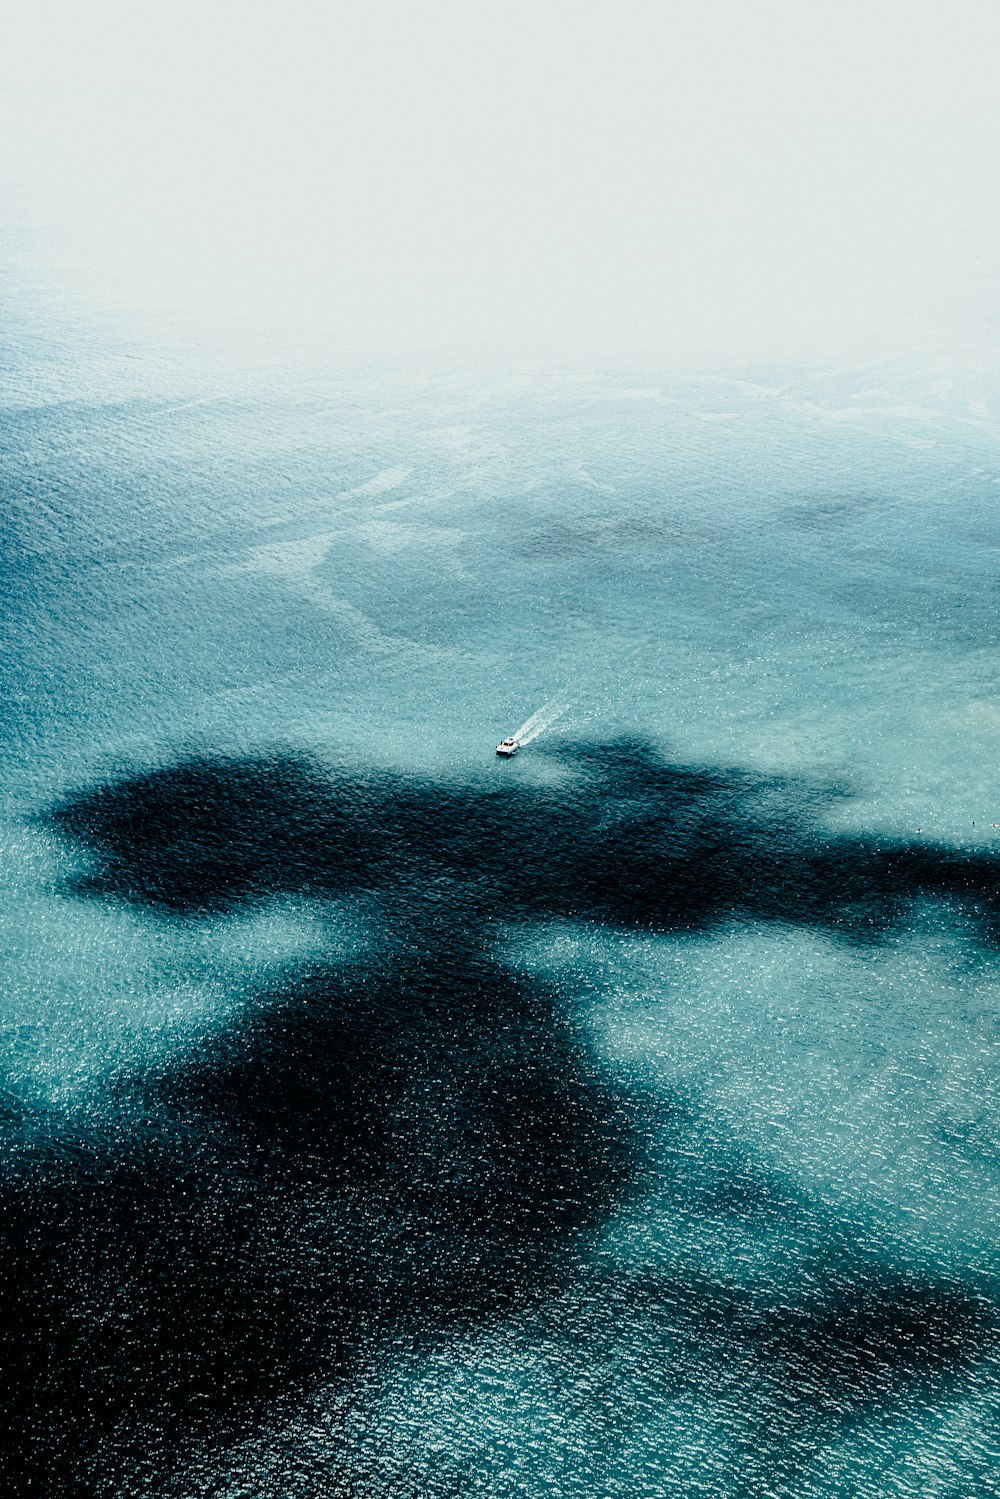 L'ombra di una barca sull'acqua